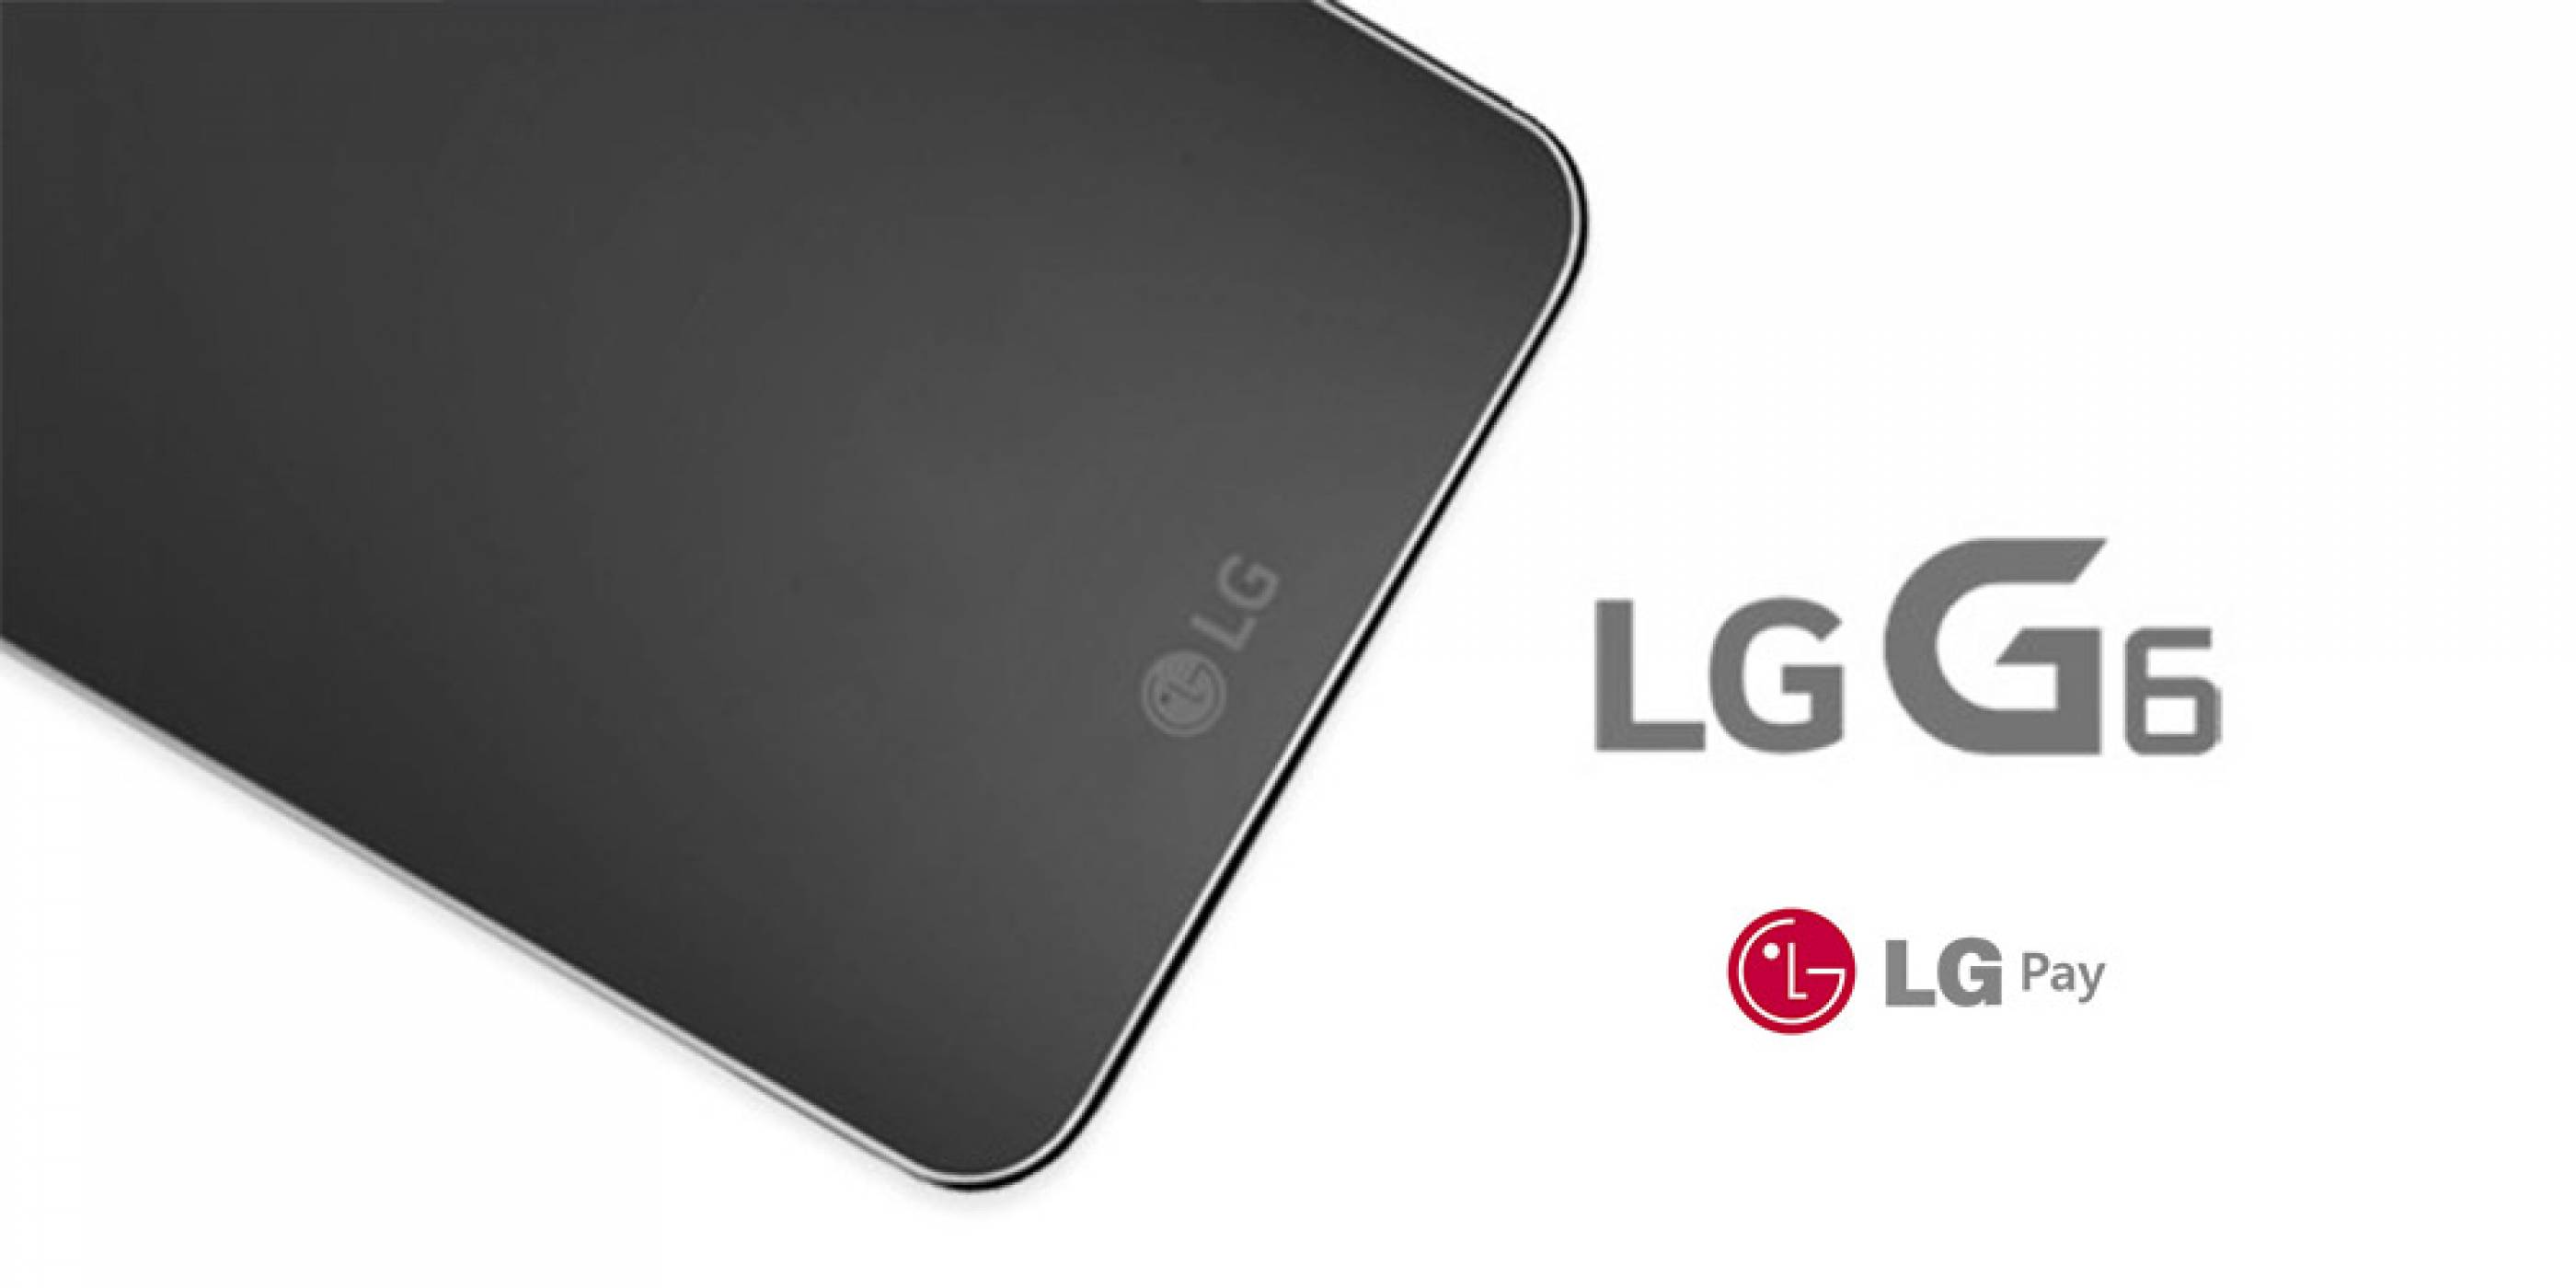 LG ще пусне своя услуга за мобилни плащания, наречена LG Pay